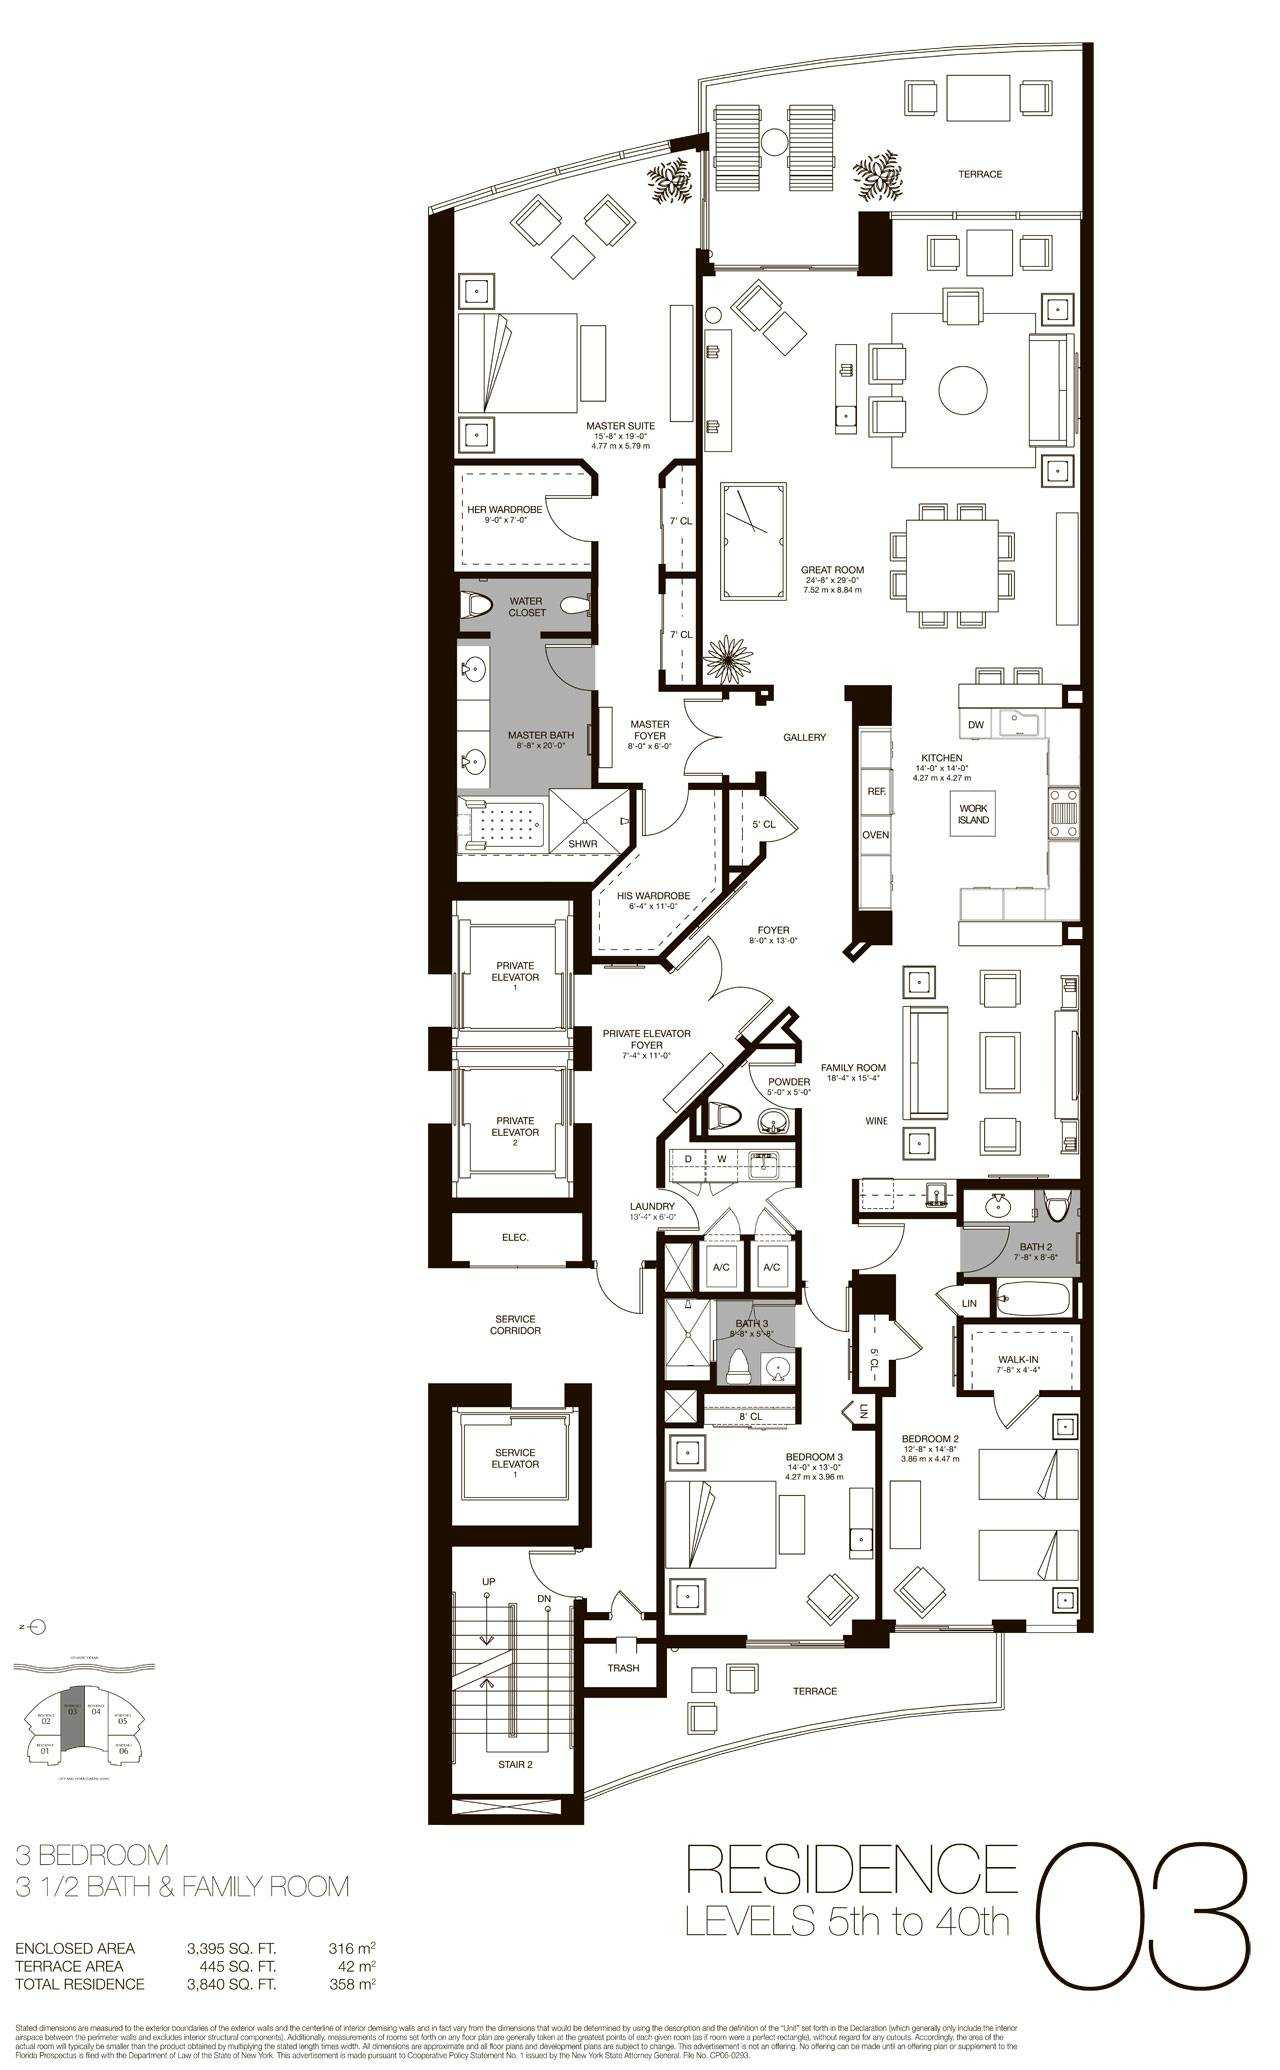 Residences 03 - 04, Level 5-40